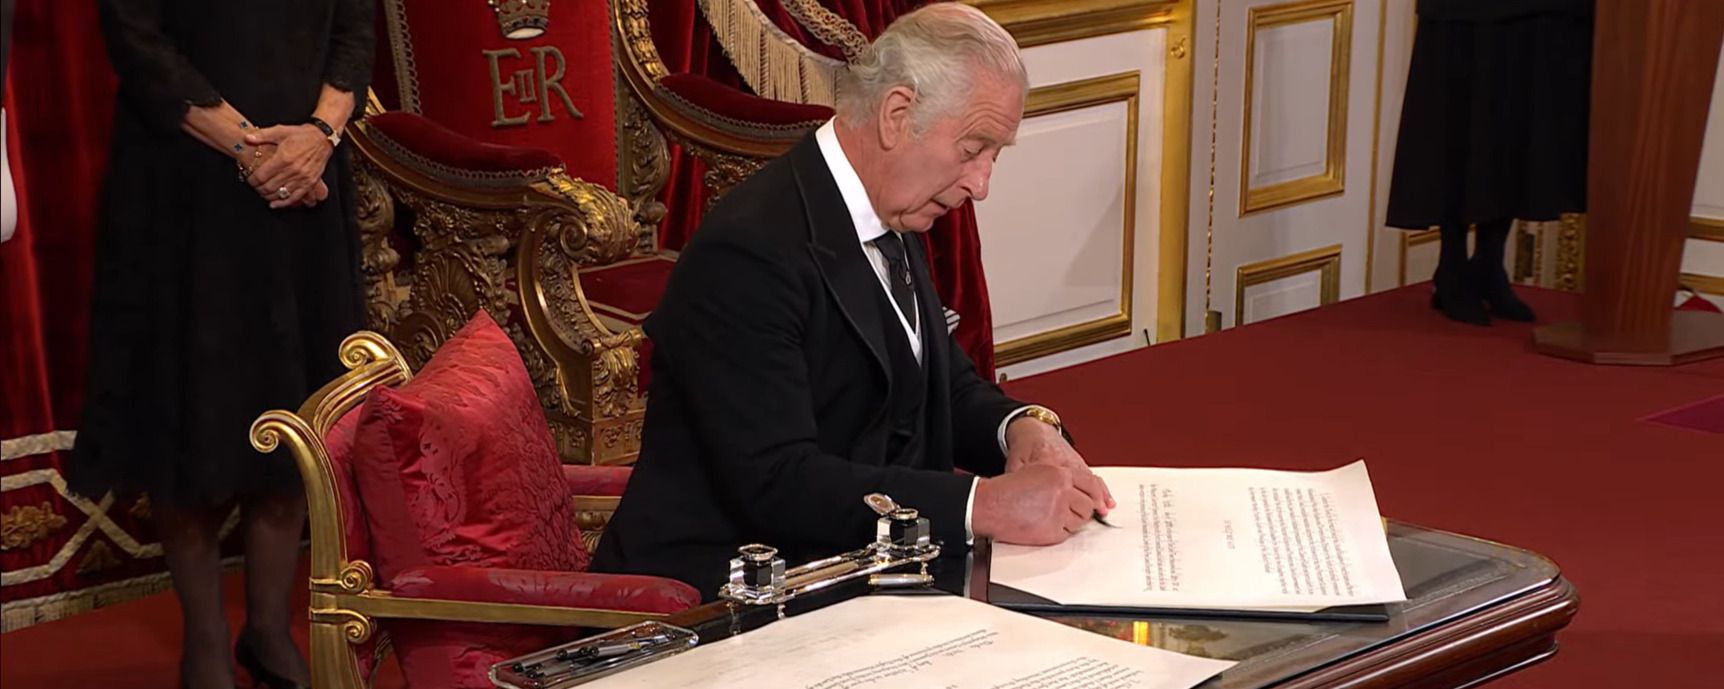 Король Чарльз III розгнівався через ручку - курйозне відео